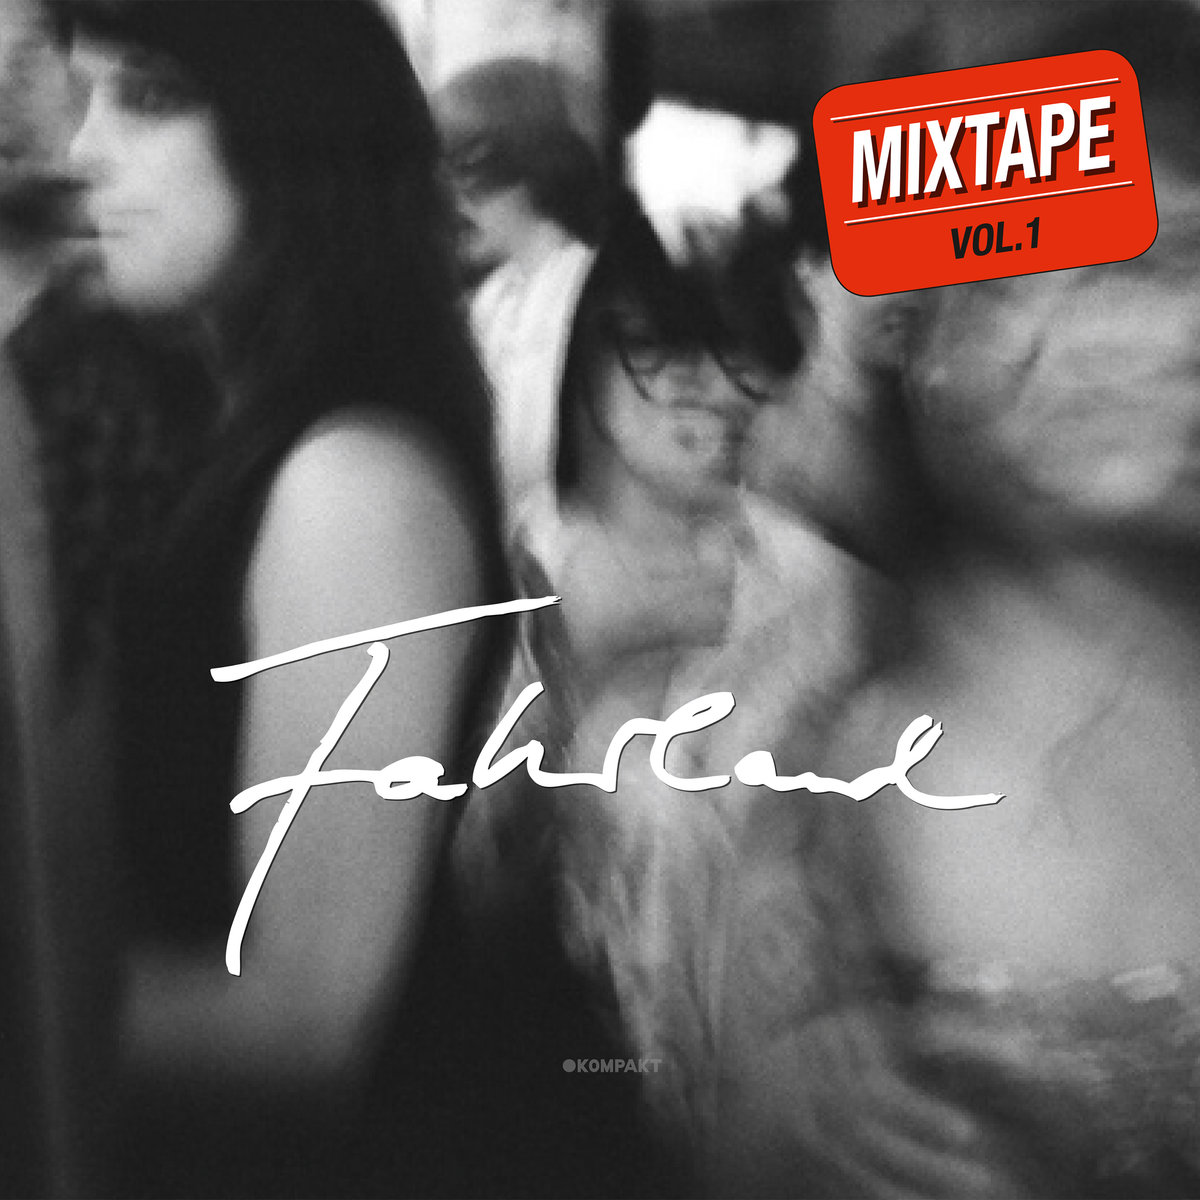 Fahrland – Mixtape Vol. 1